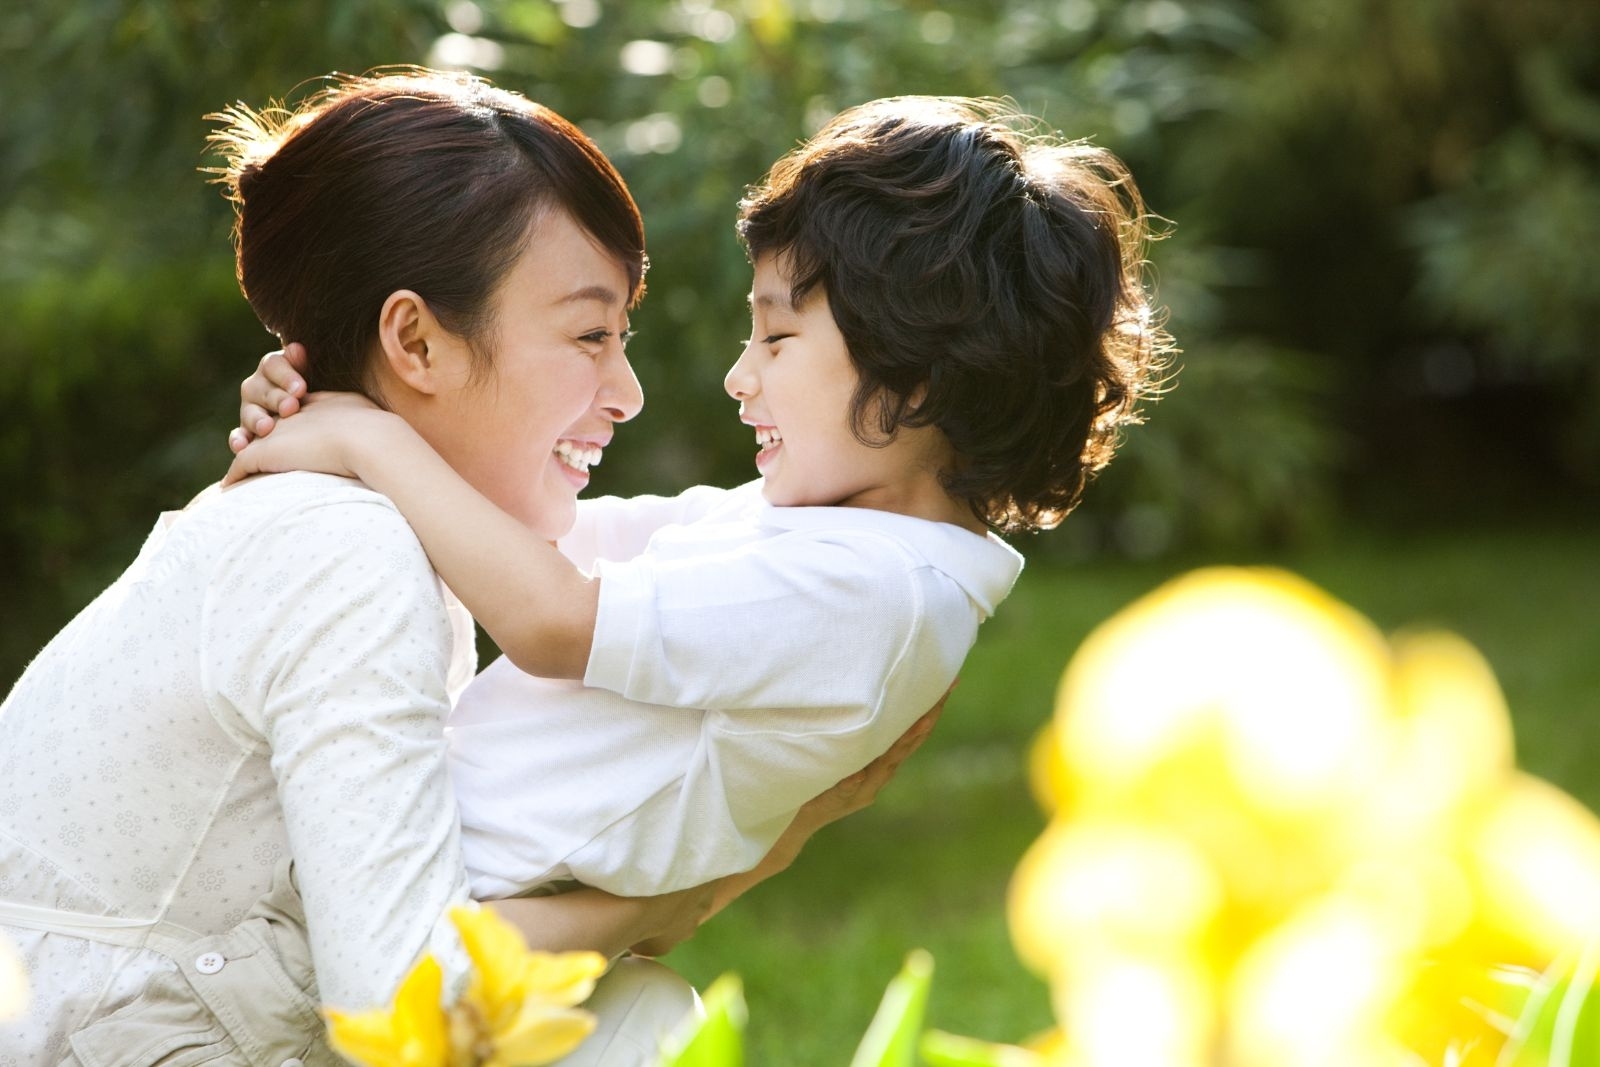   Cha mẹ hãy sử dụng ngôn ngữ cơ thể để biểu lộ tình cảm yêu thương dành cho con  